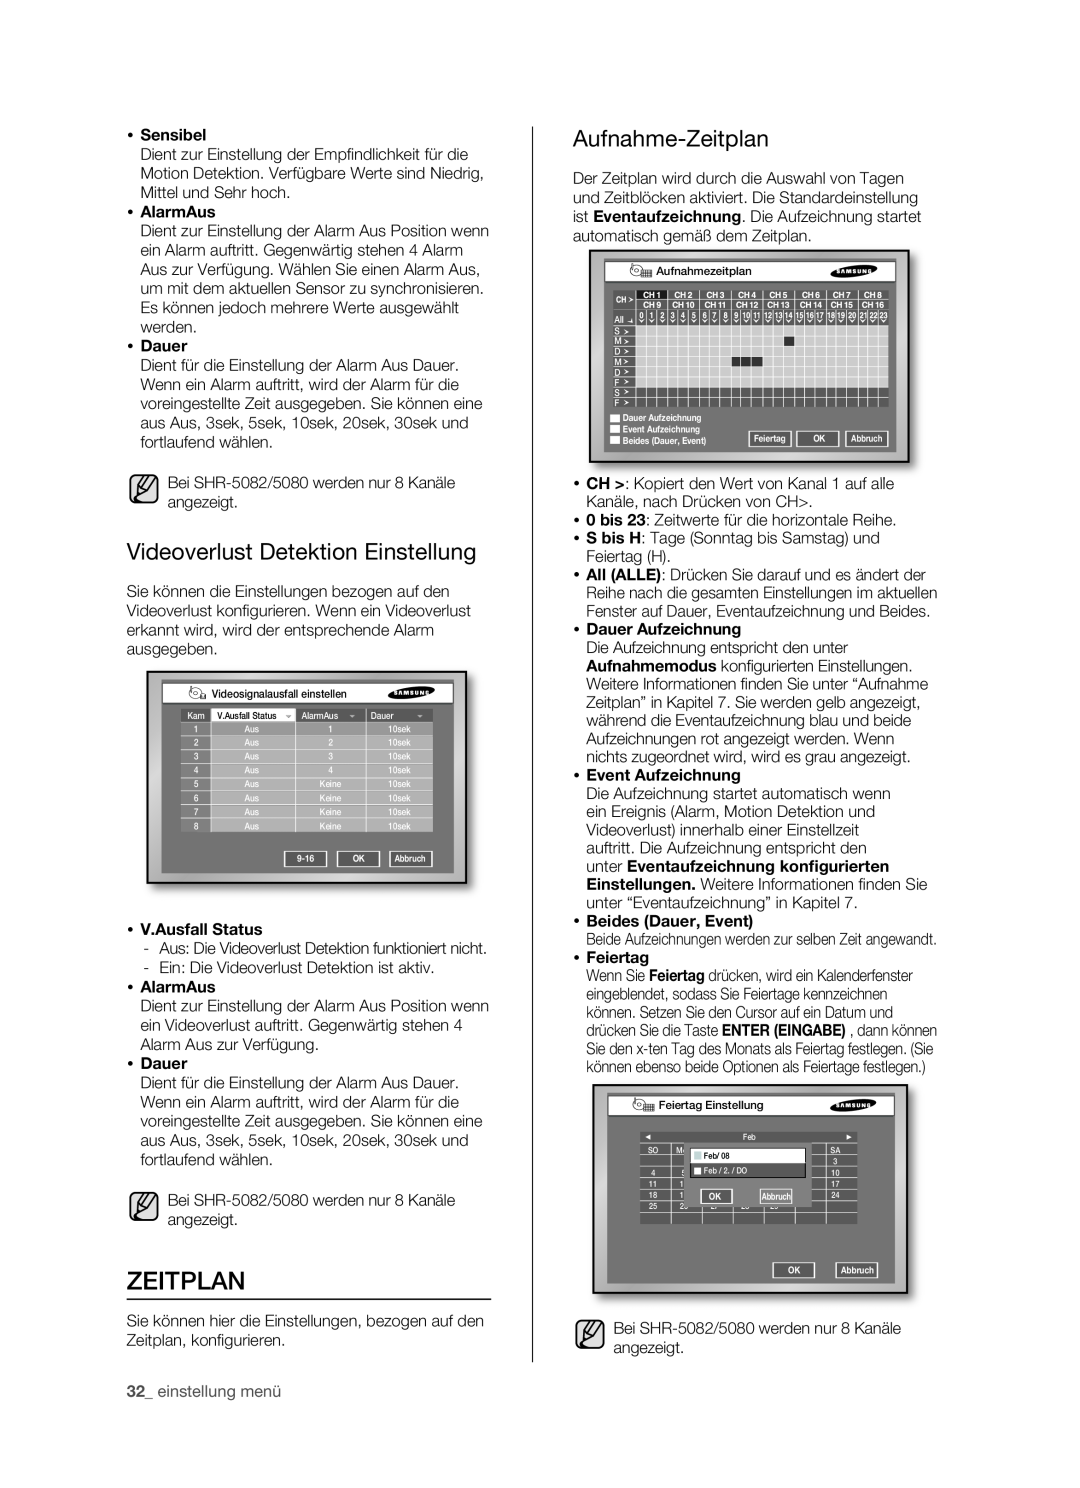 Samsung SHR-5082P/XEG manual Videoverlust Detektion Einstellung, Aufnahme-Zeitplan,  Sensibel,  AlarmAus,  Dauer 